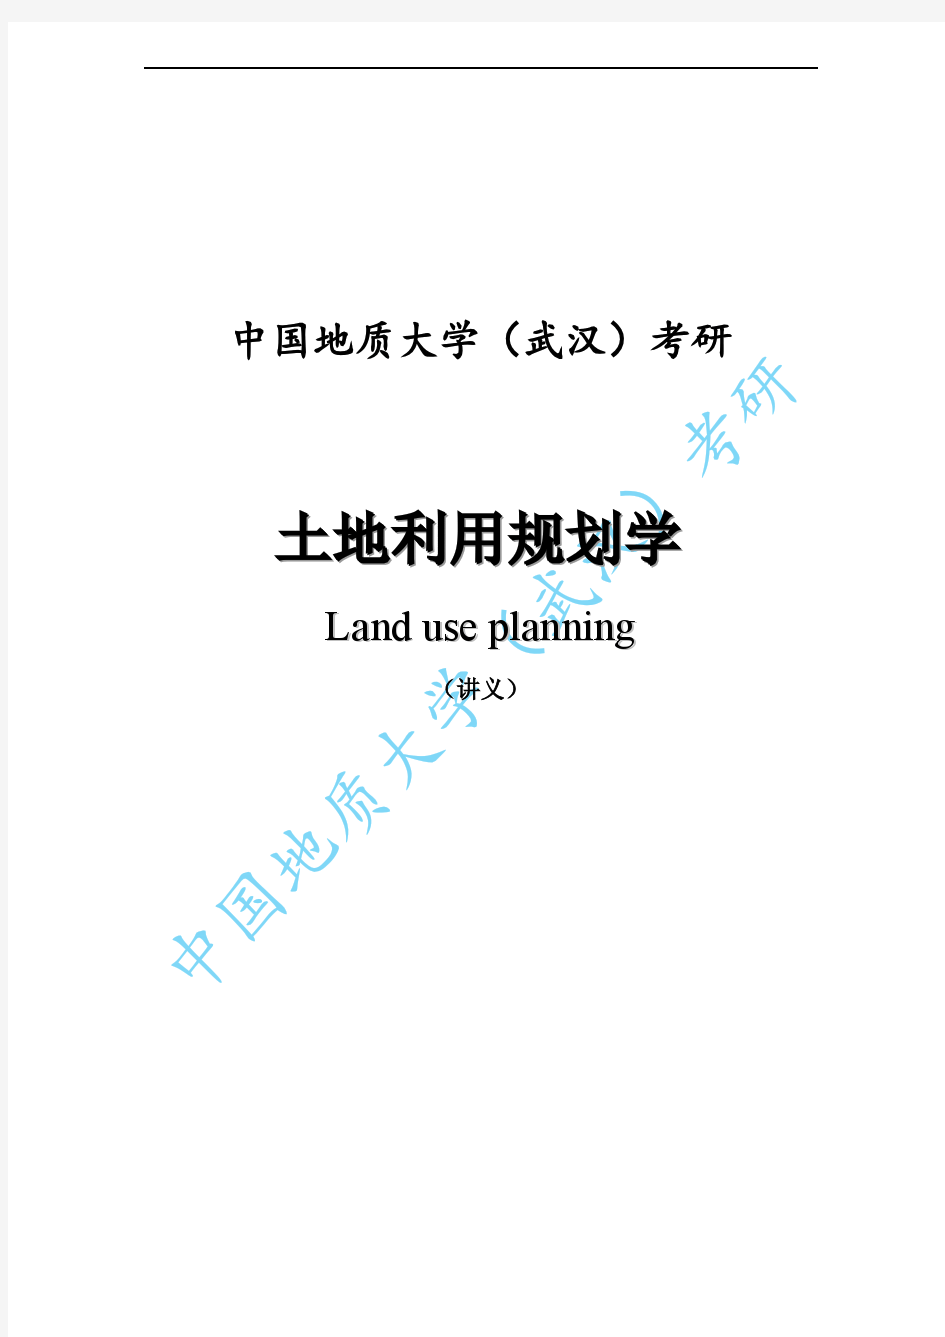 中国地质大学(武汉)考研《土地利用规划学》考点讲义